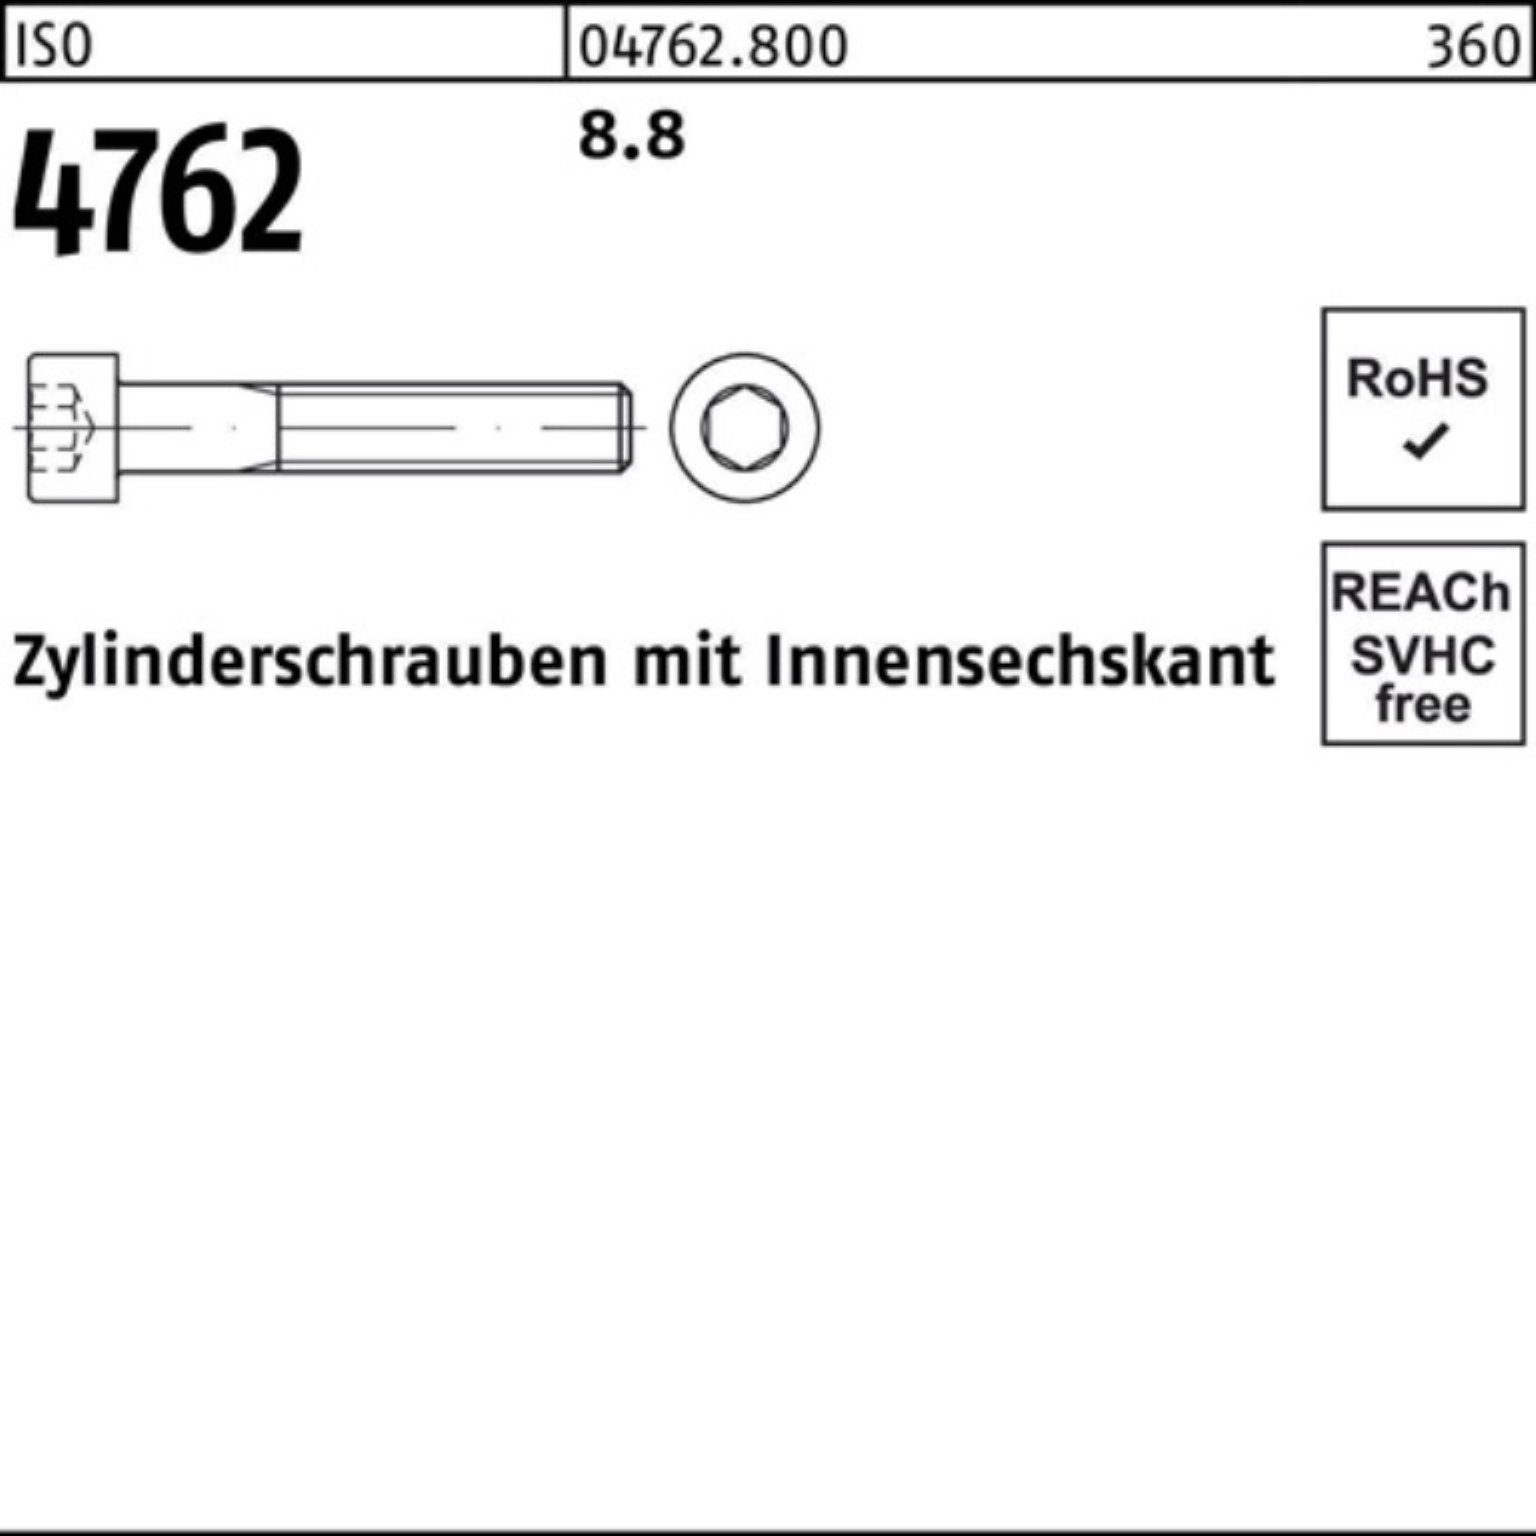 Reyher Zylinderschraube 100er 8.8 ISO I 4762 Innen-6kt 1 400 Pack Stück M36x Zylinderschraube